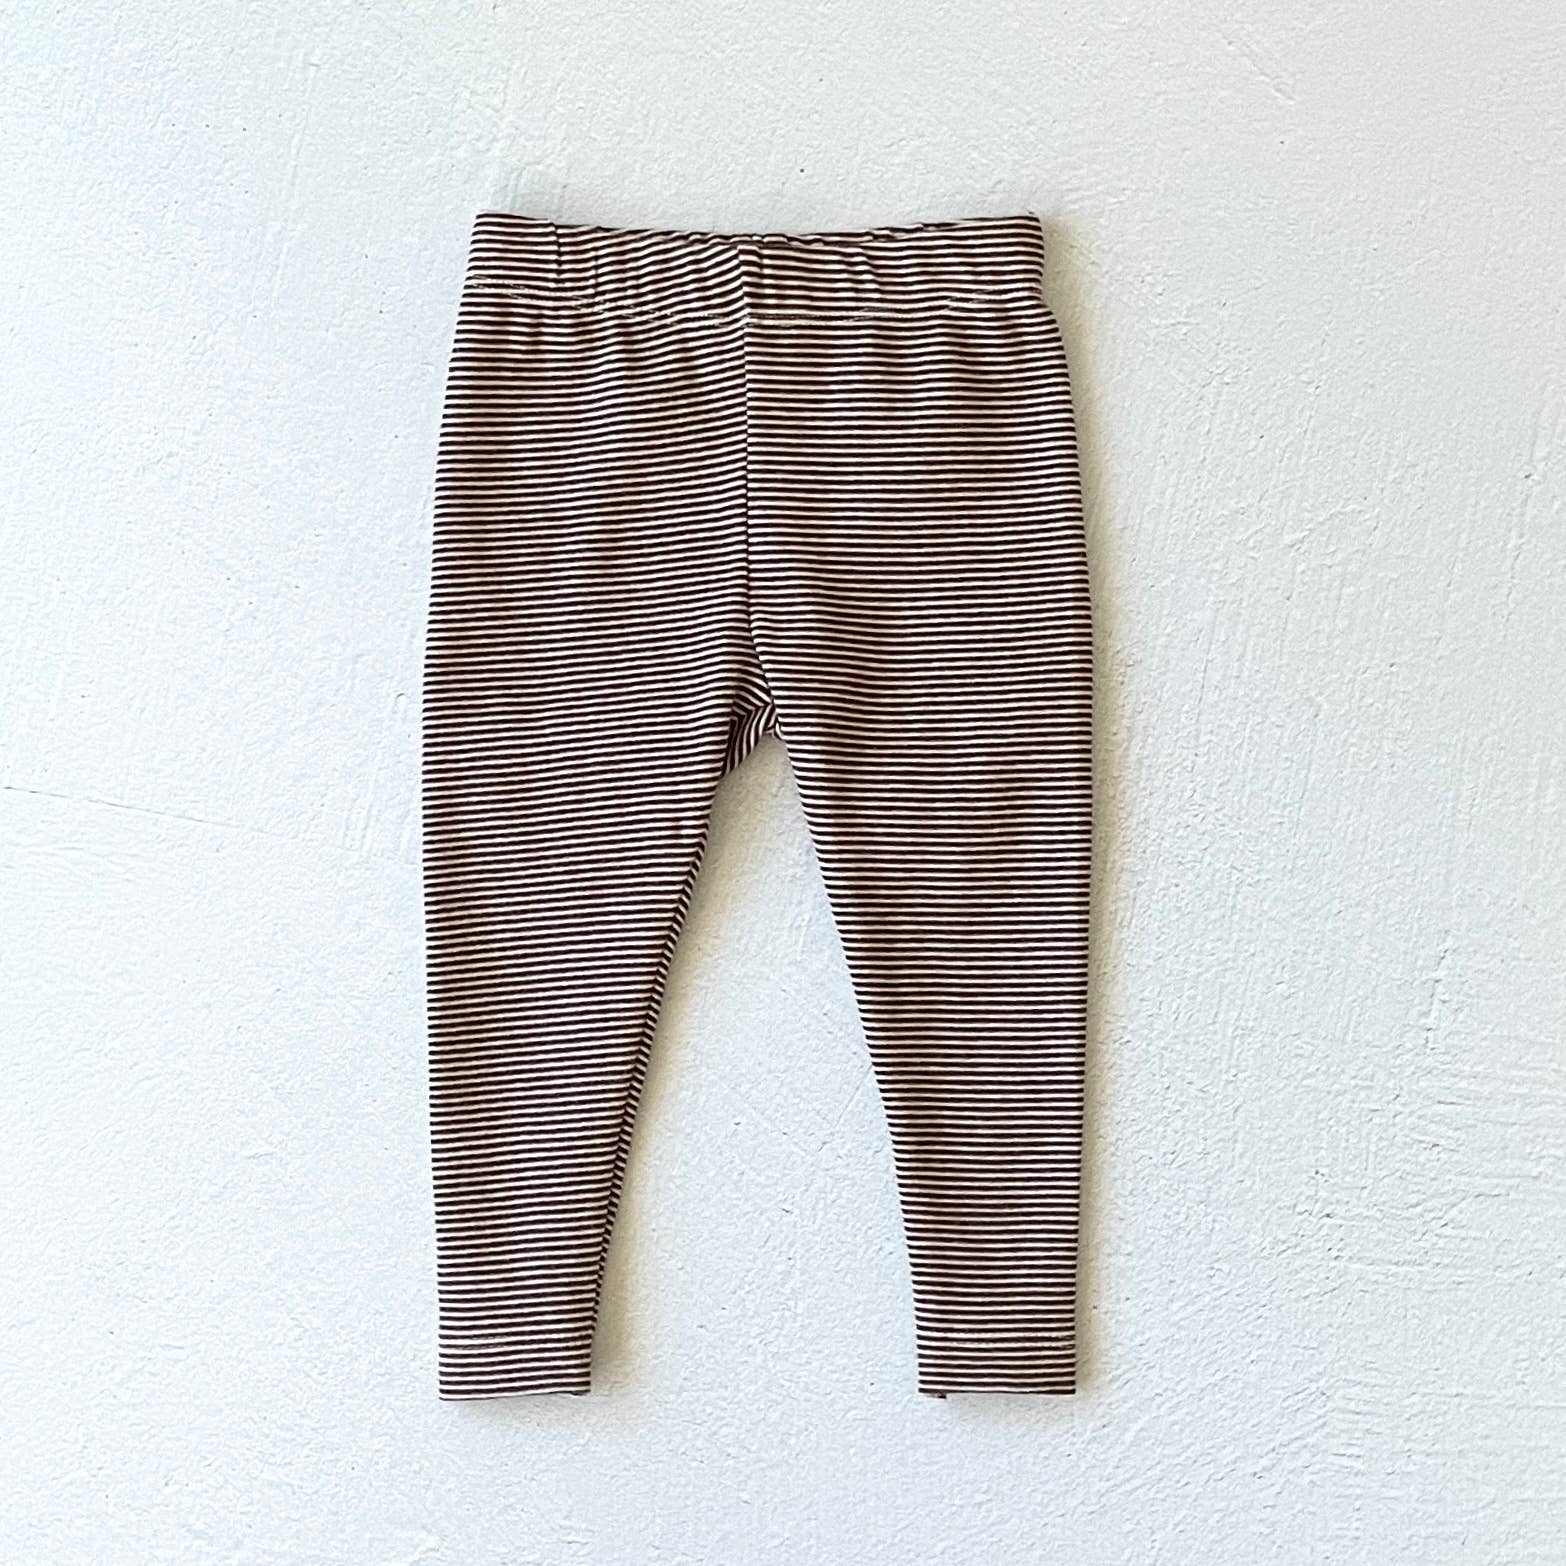 Knit Baby Legging Pants